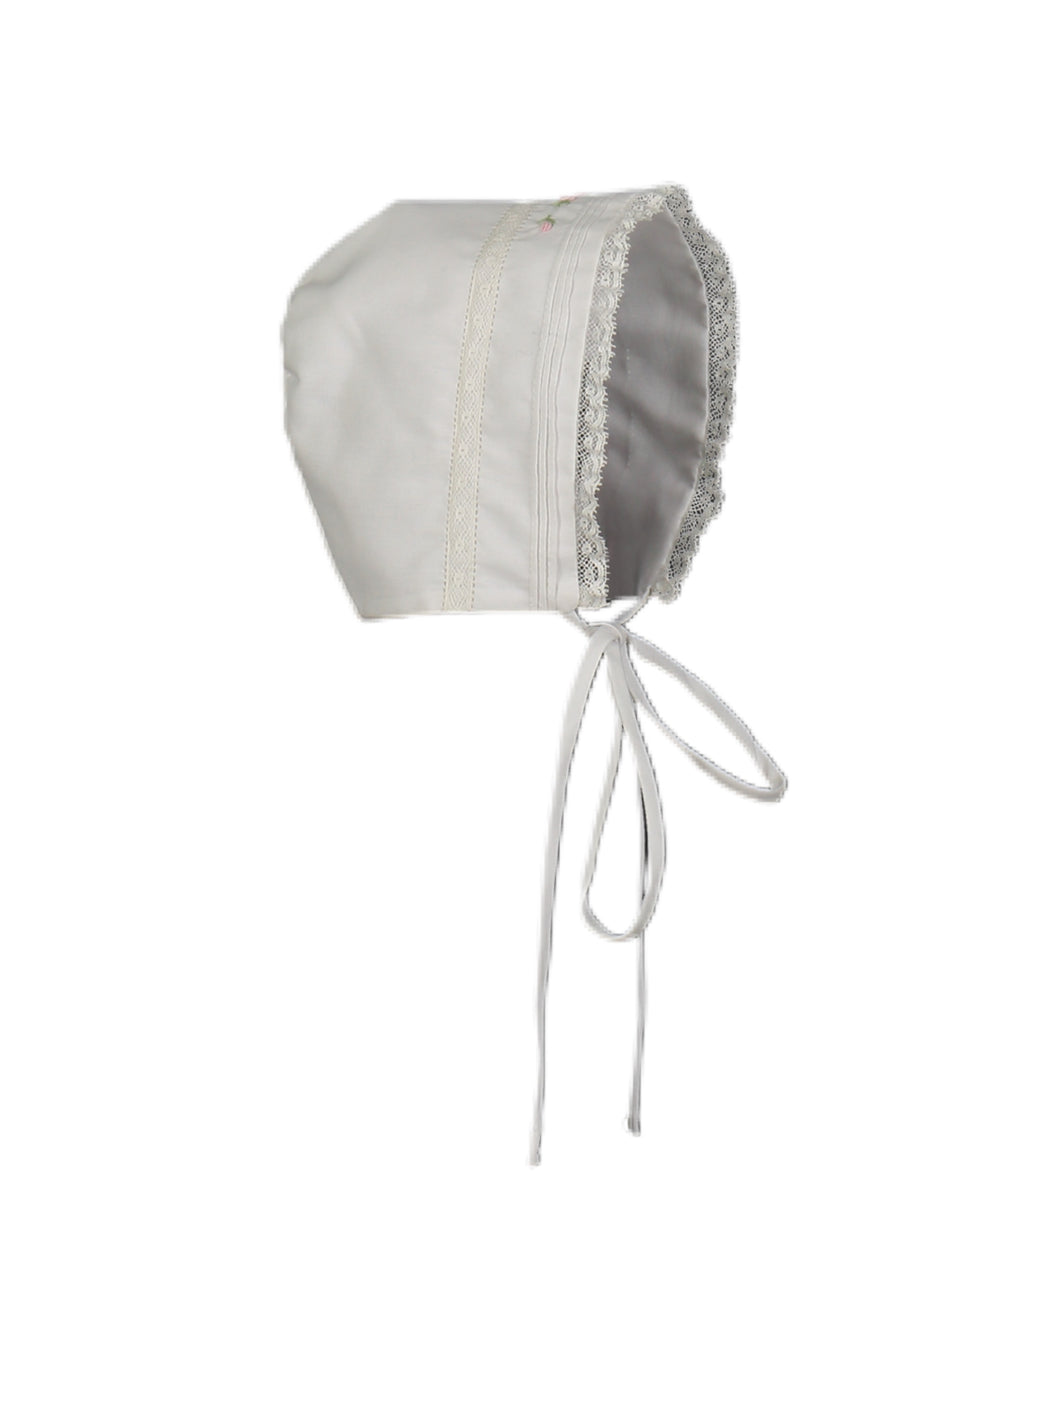 Feltman White Vintage Bonnet